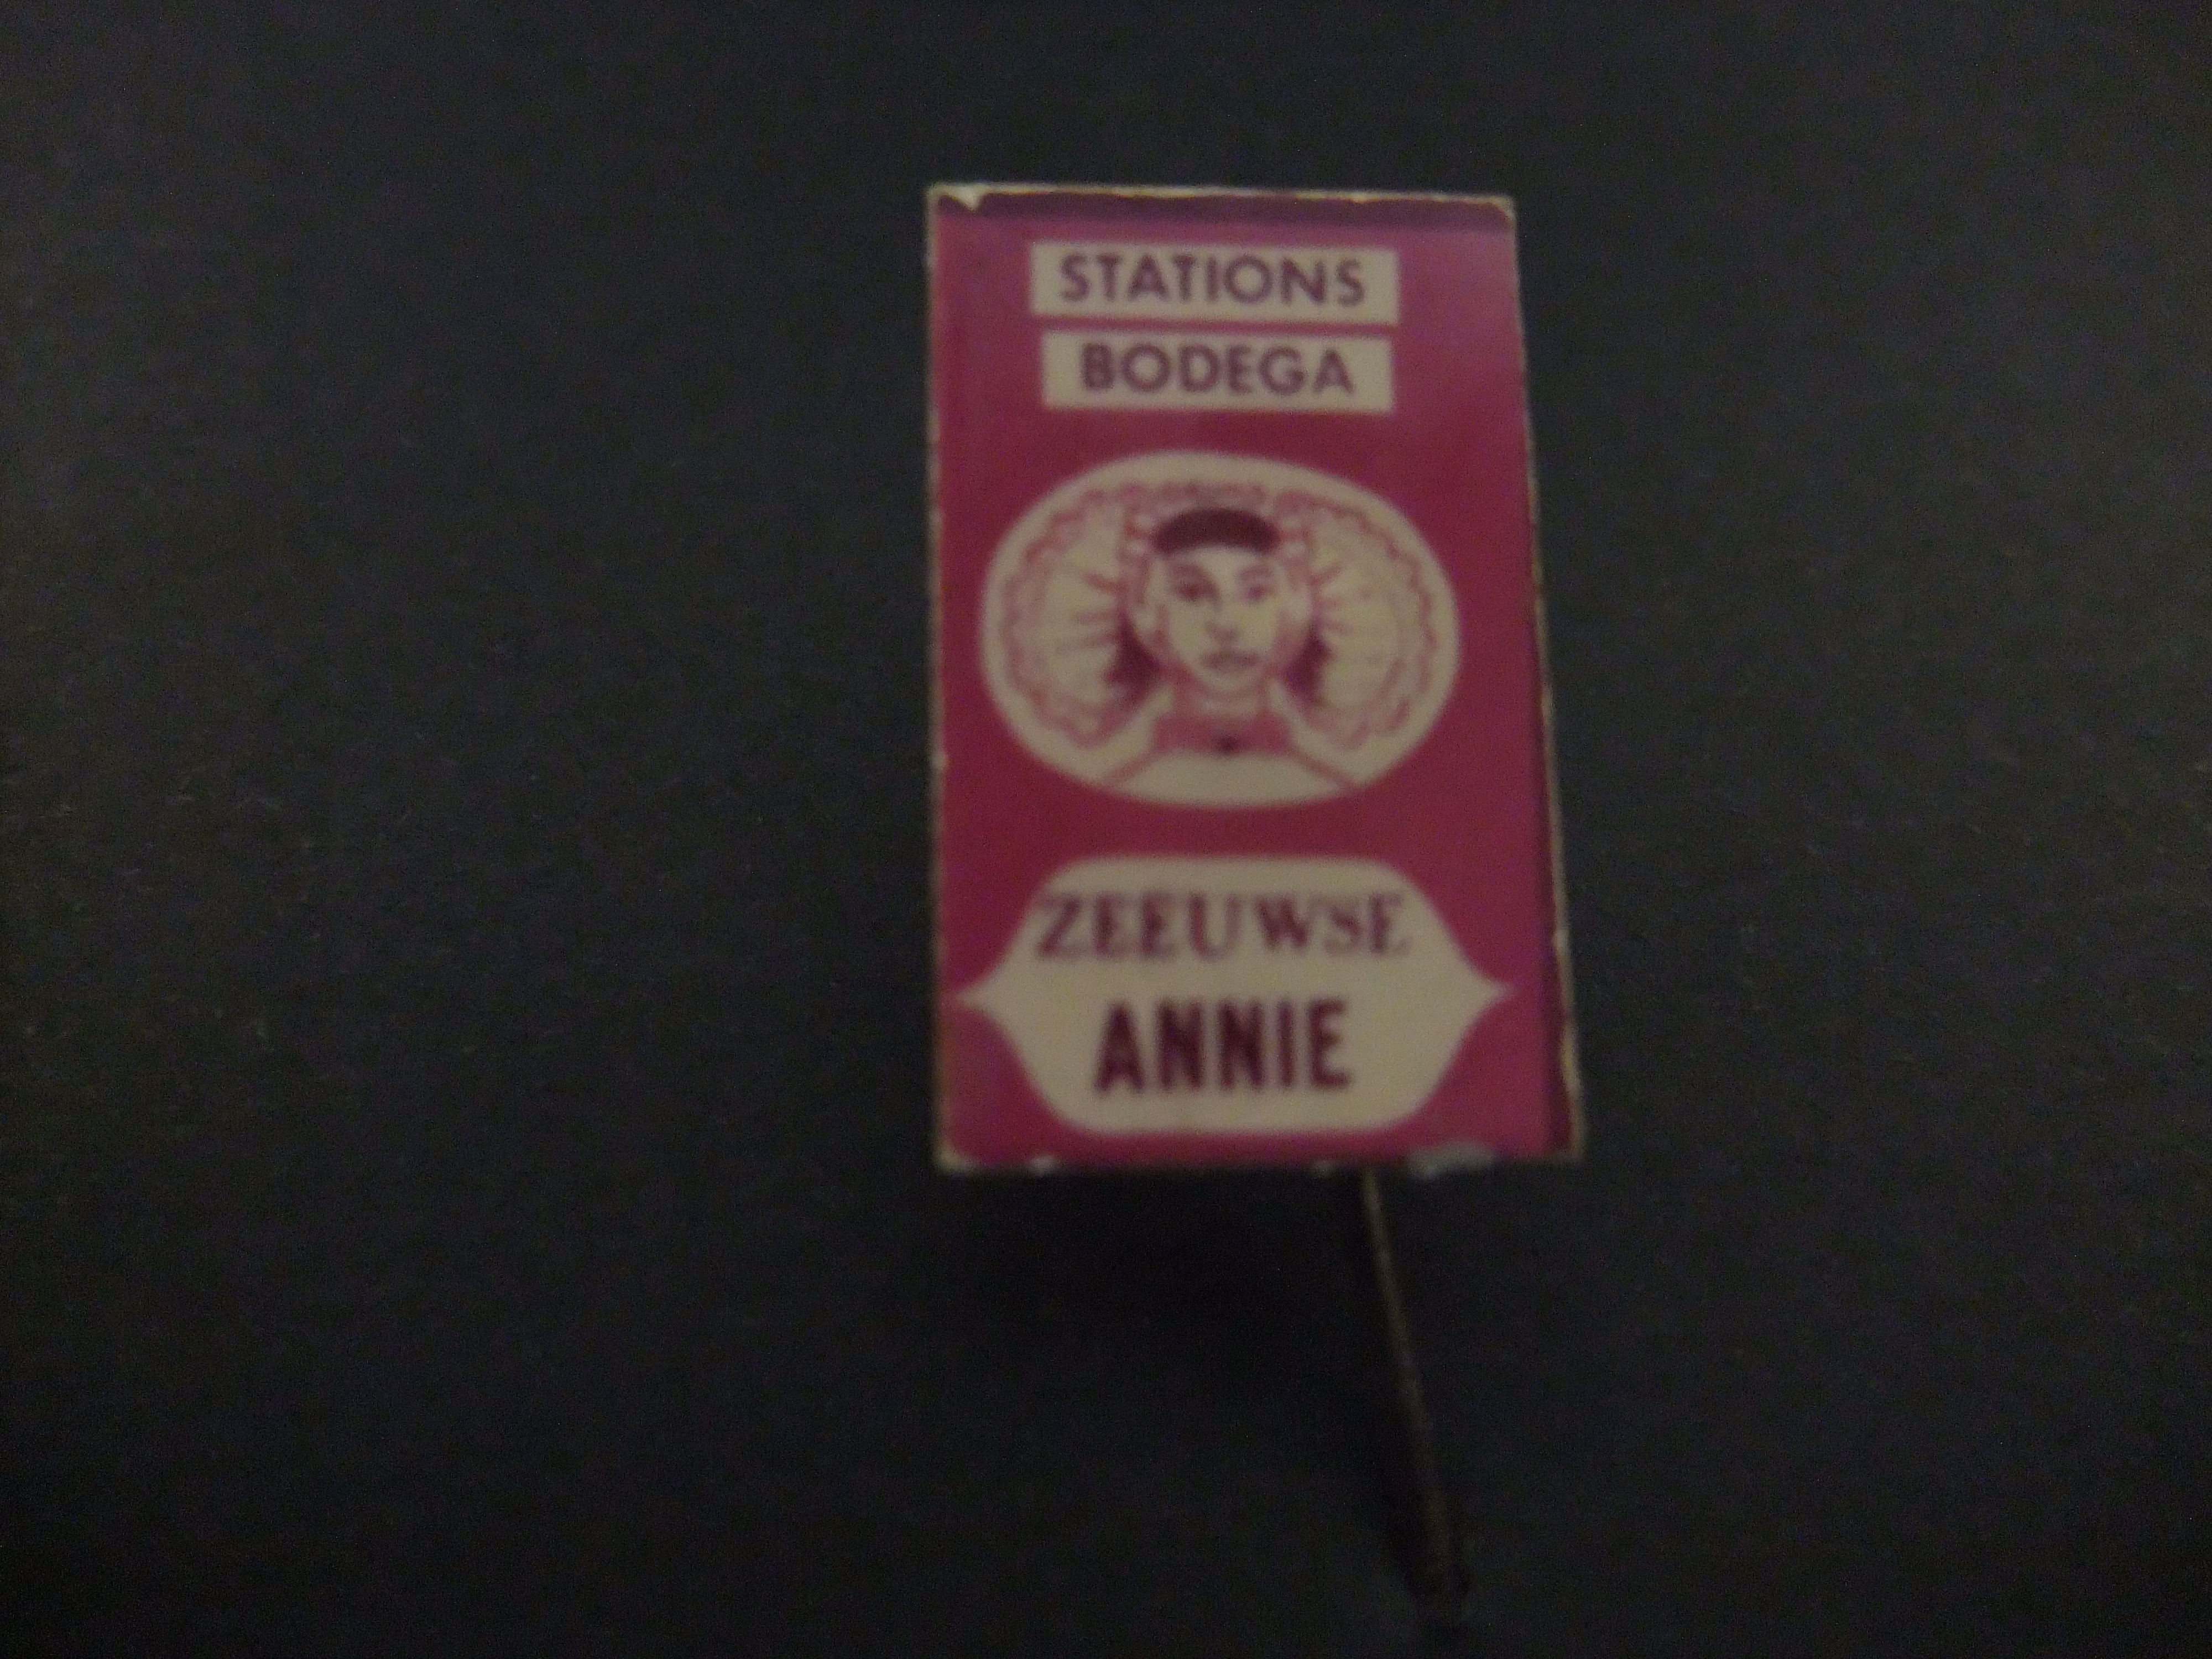 Stations Bodega Zeeuwse Annie ( klederdracht)